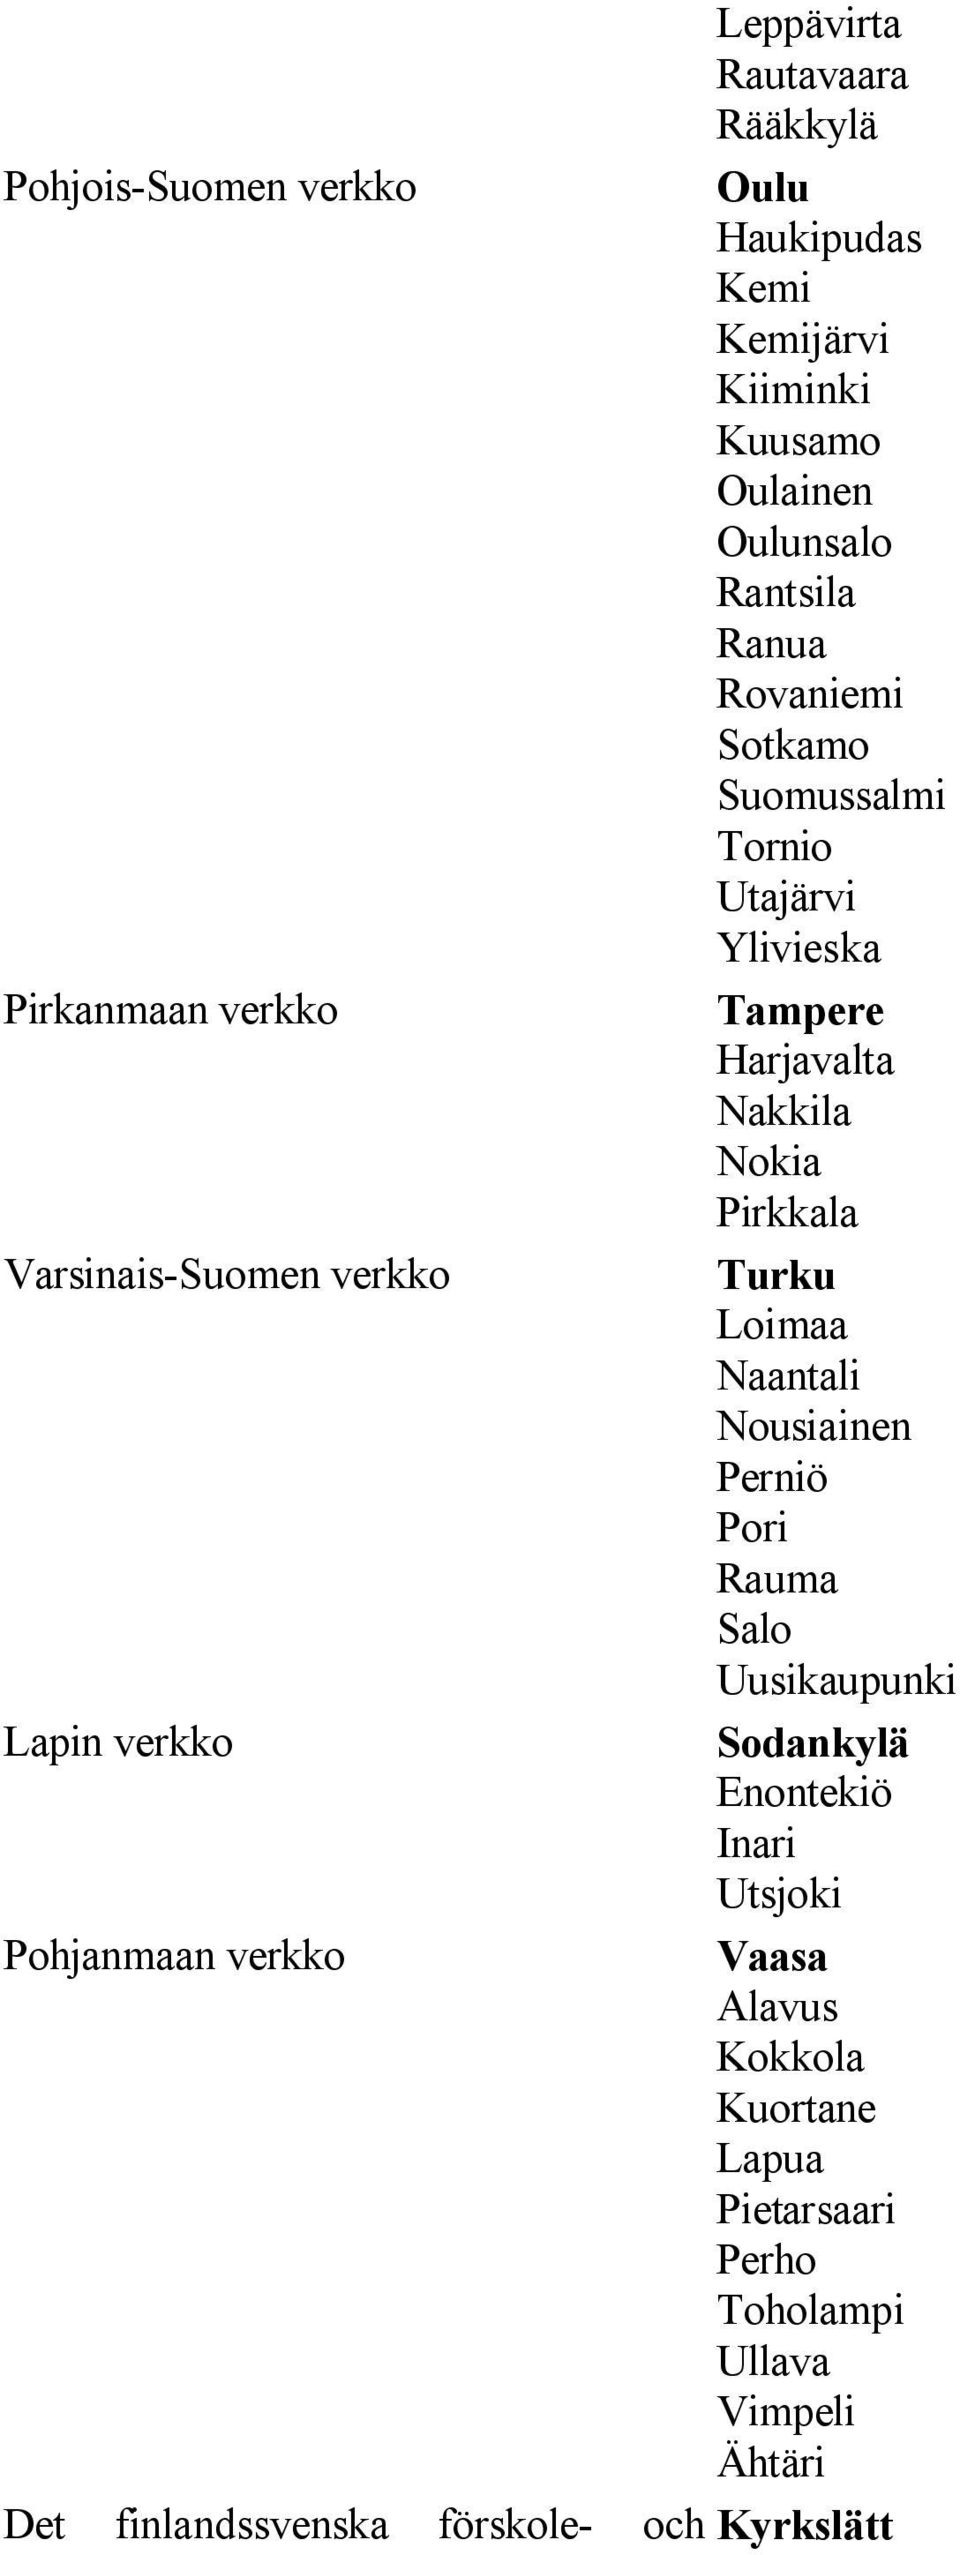 verkko Turku Loimaa Naantali Nousiainen Perniö Pori Rauma Salo Uusikaupunki Lapin verkko Sodankylä Enontekiö Inari Utsjoki Pohjanmaan